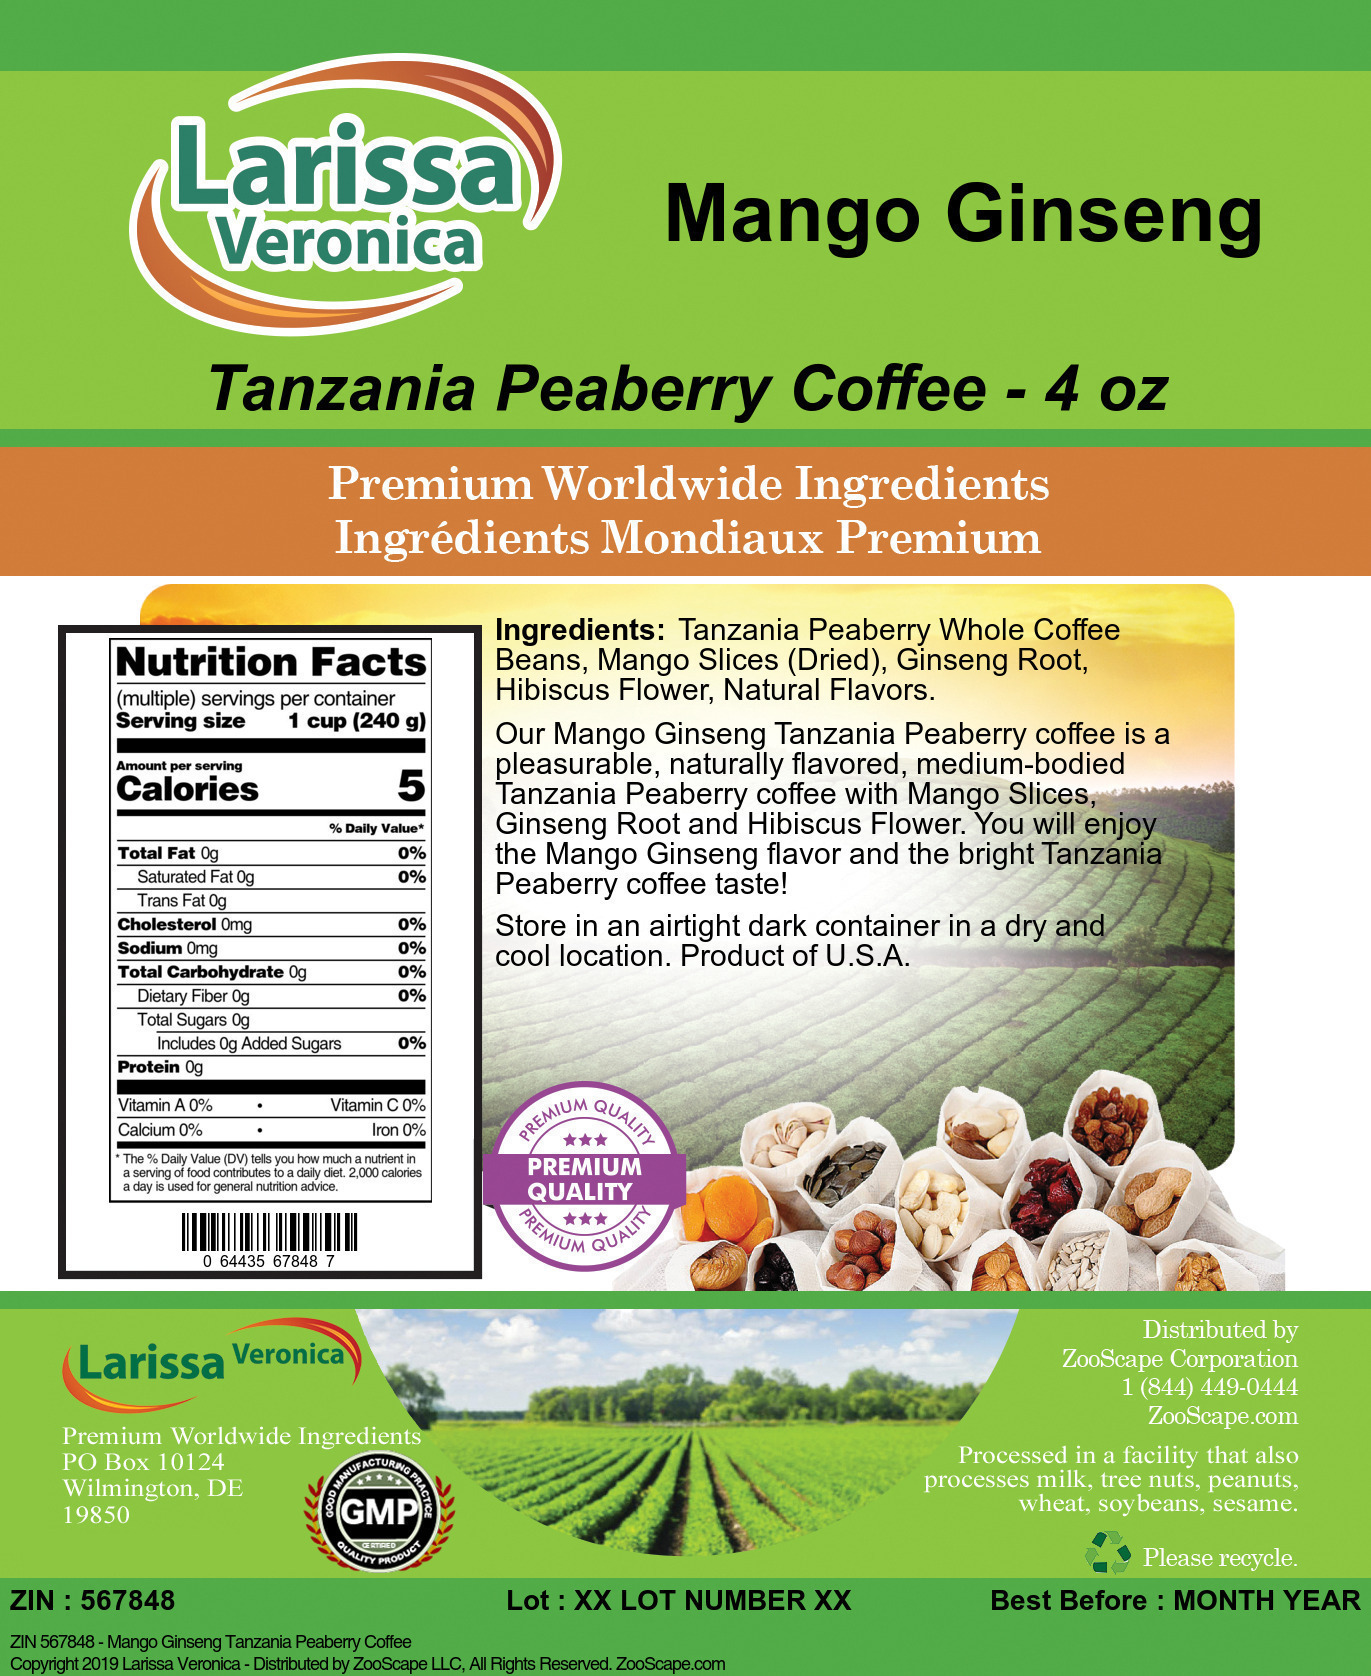 Mango Ginseng Tanzania Peaberry Coffee - Label